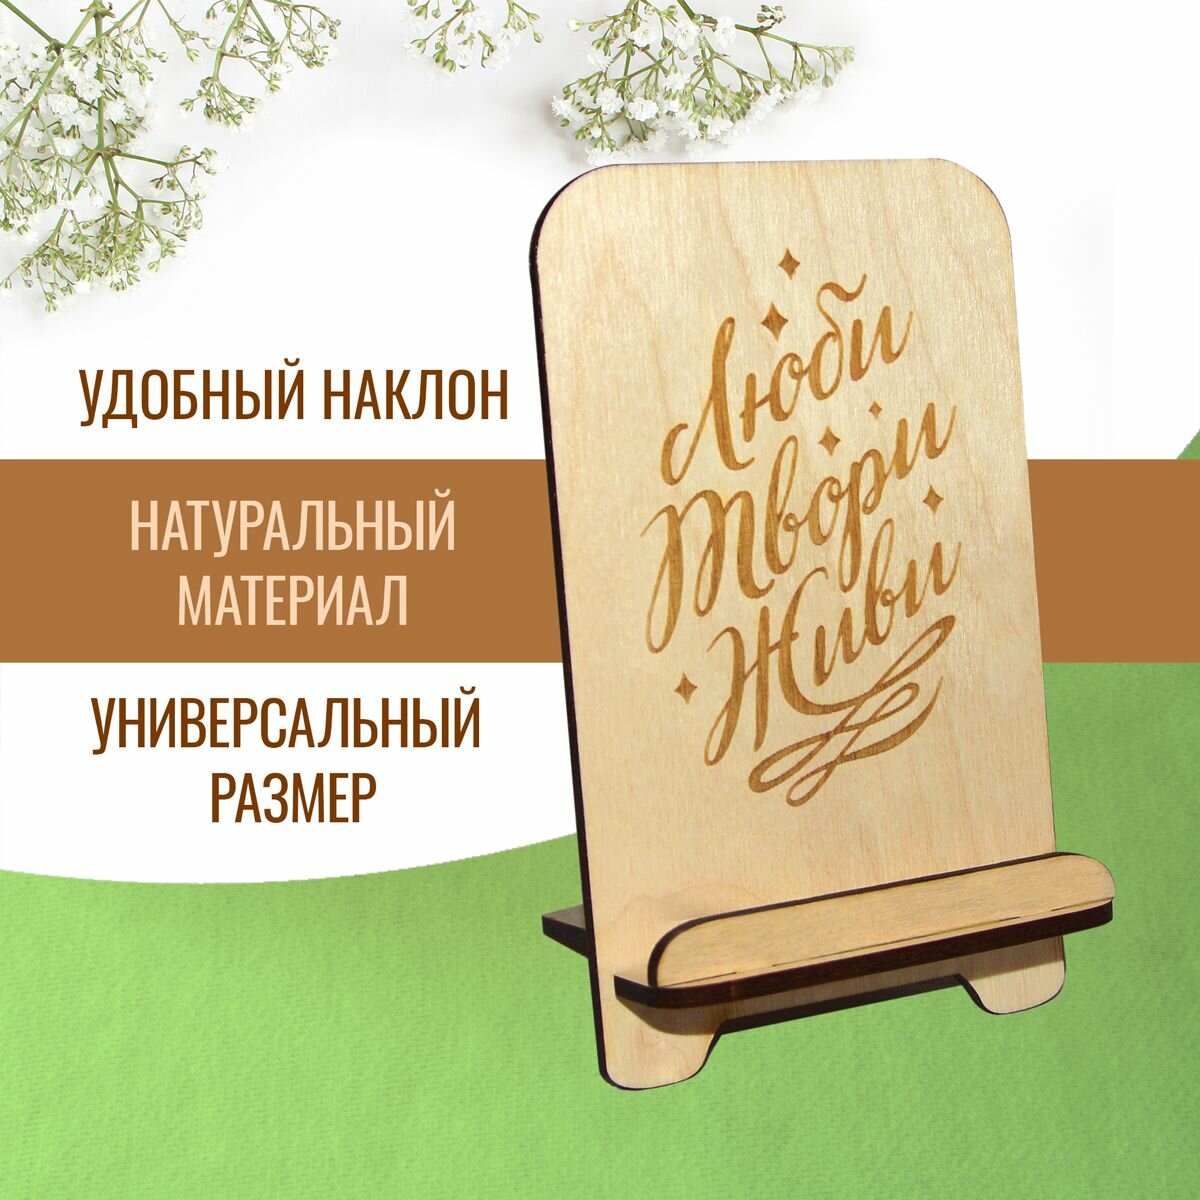 Подставка для телефона держатель для смартфона деревянный с мотивирующей надписью "Люби твори живи"